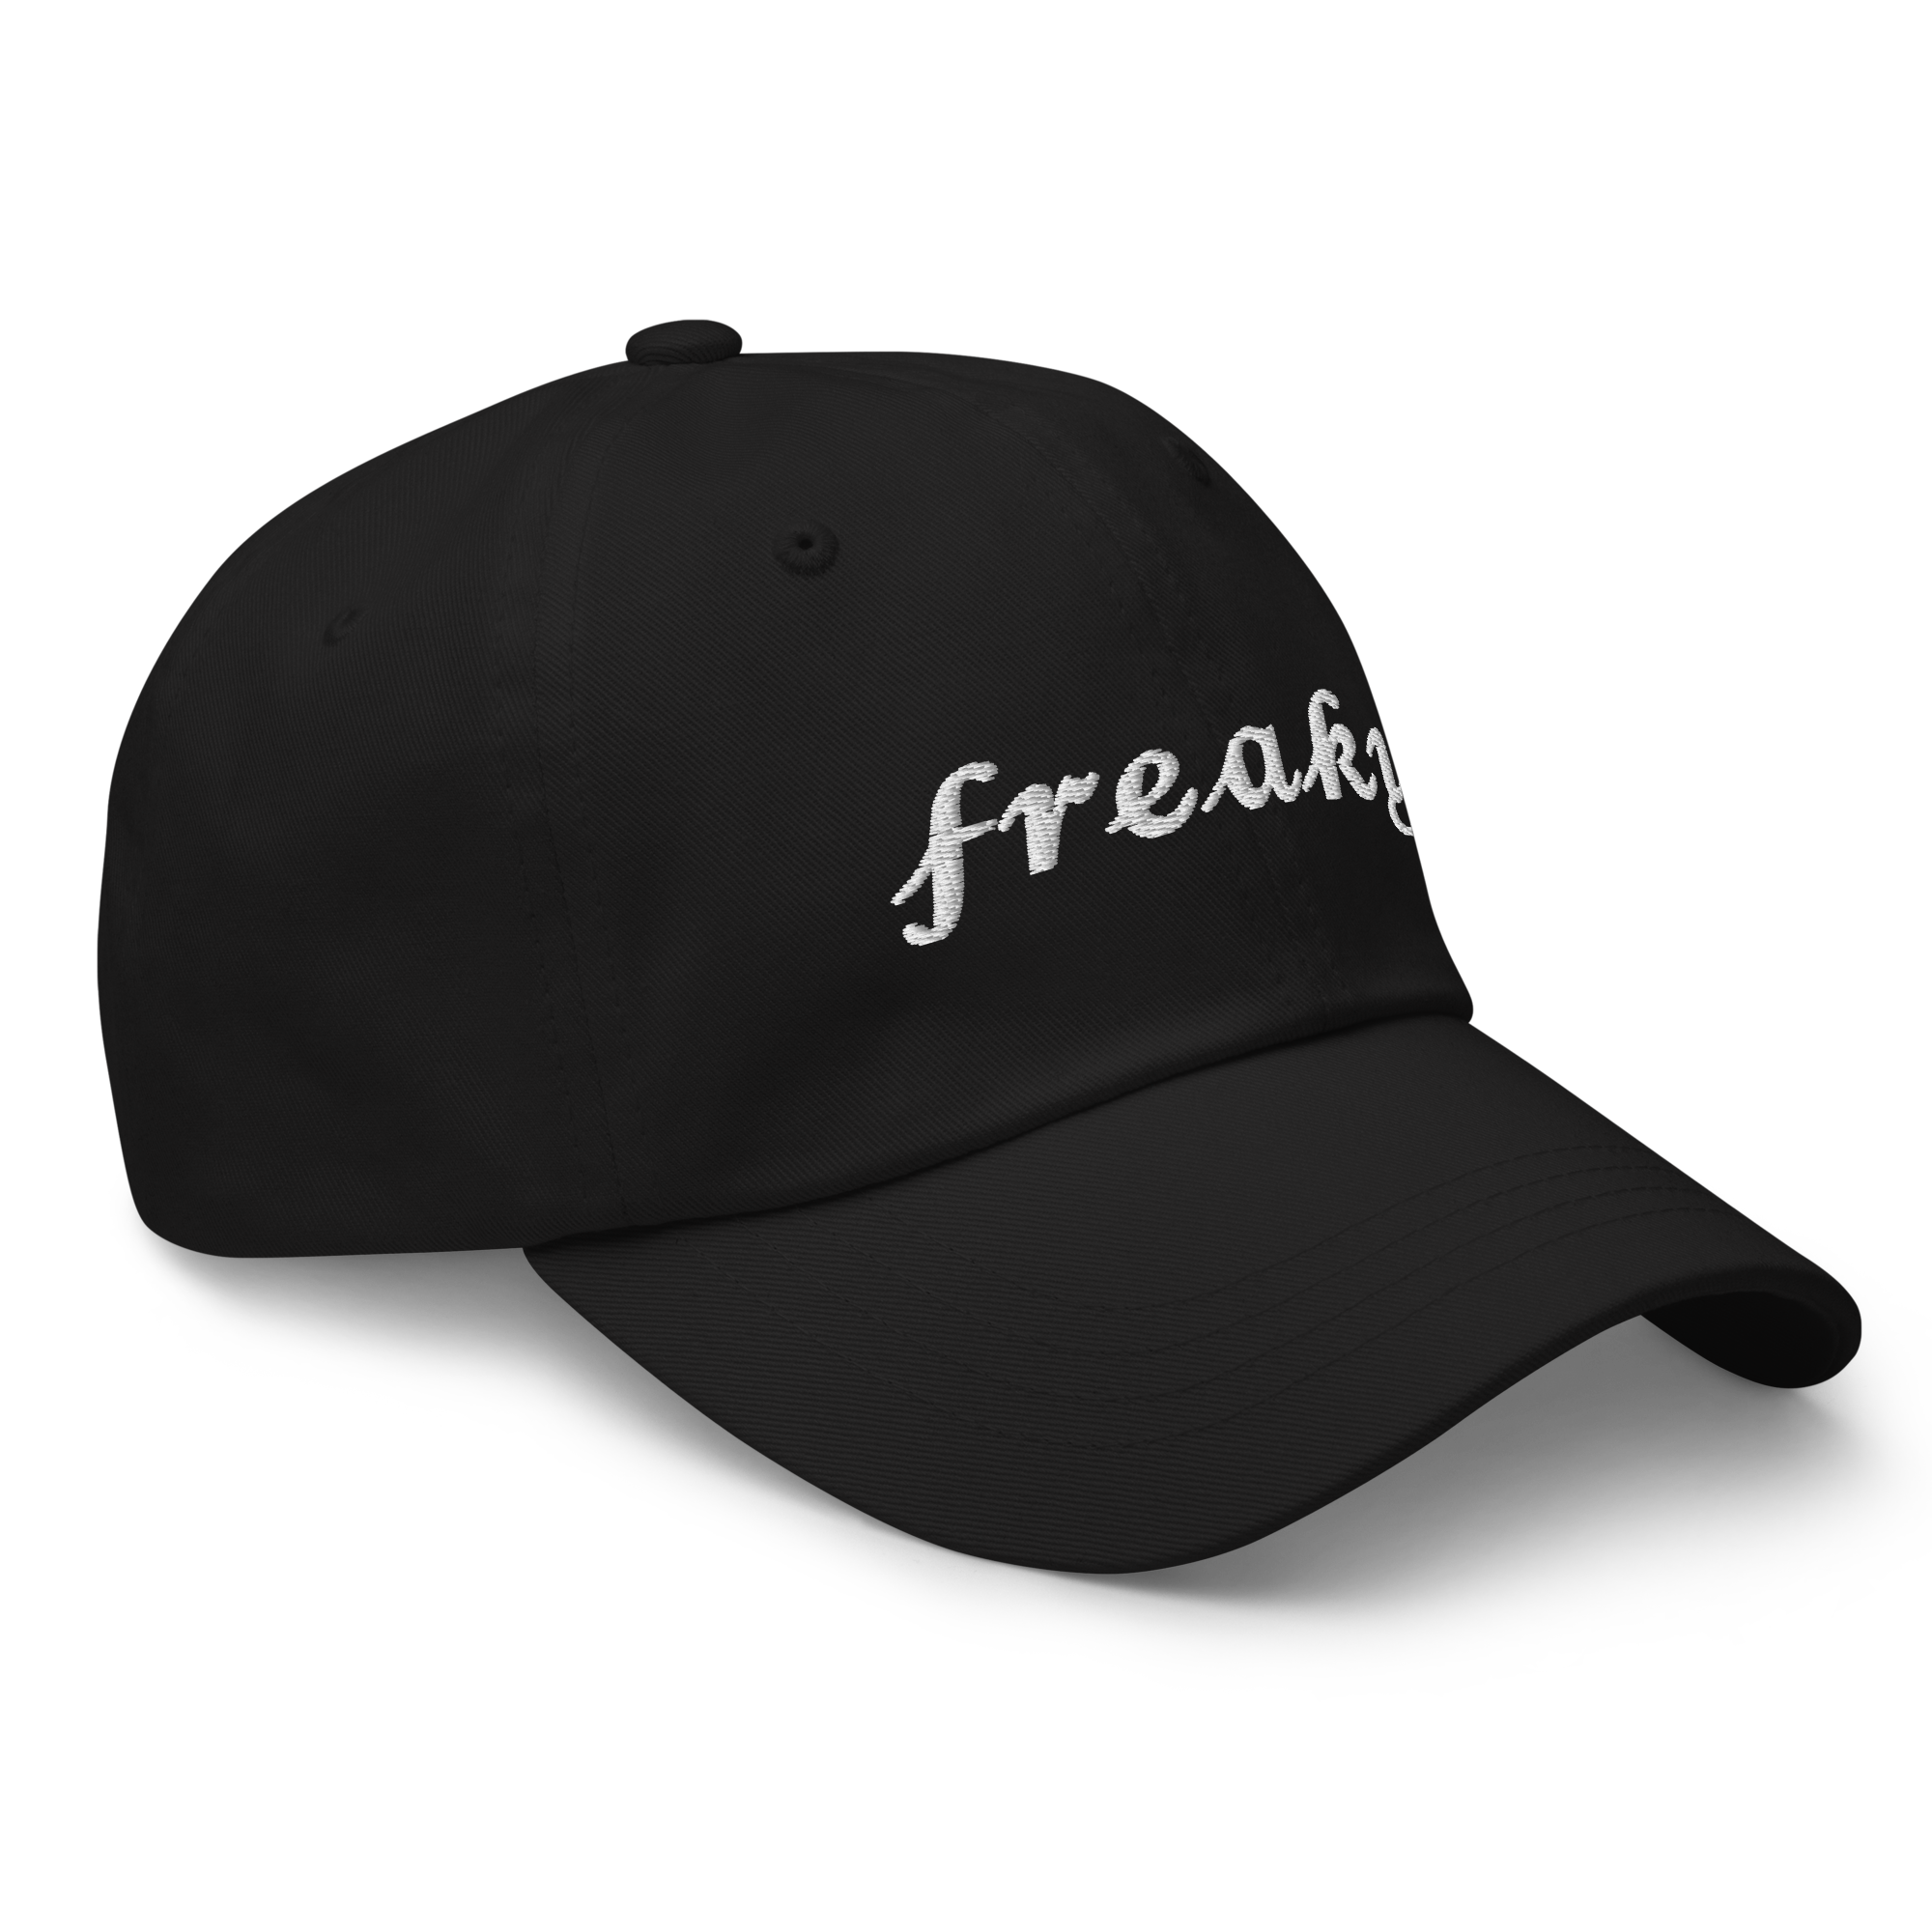 Freaky Hat